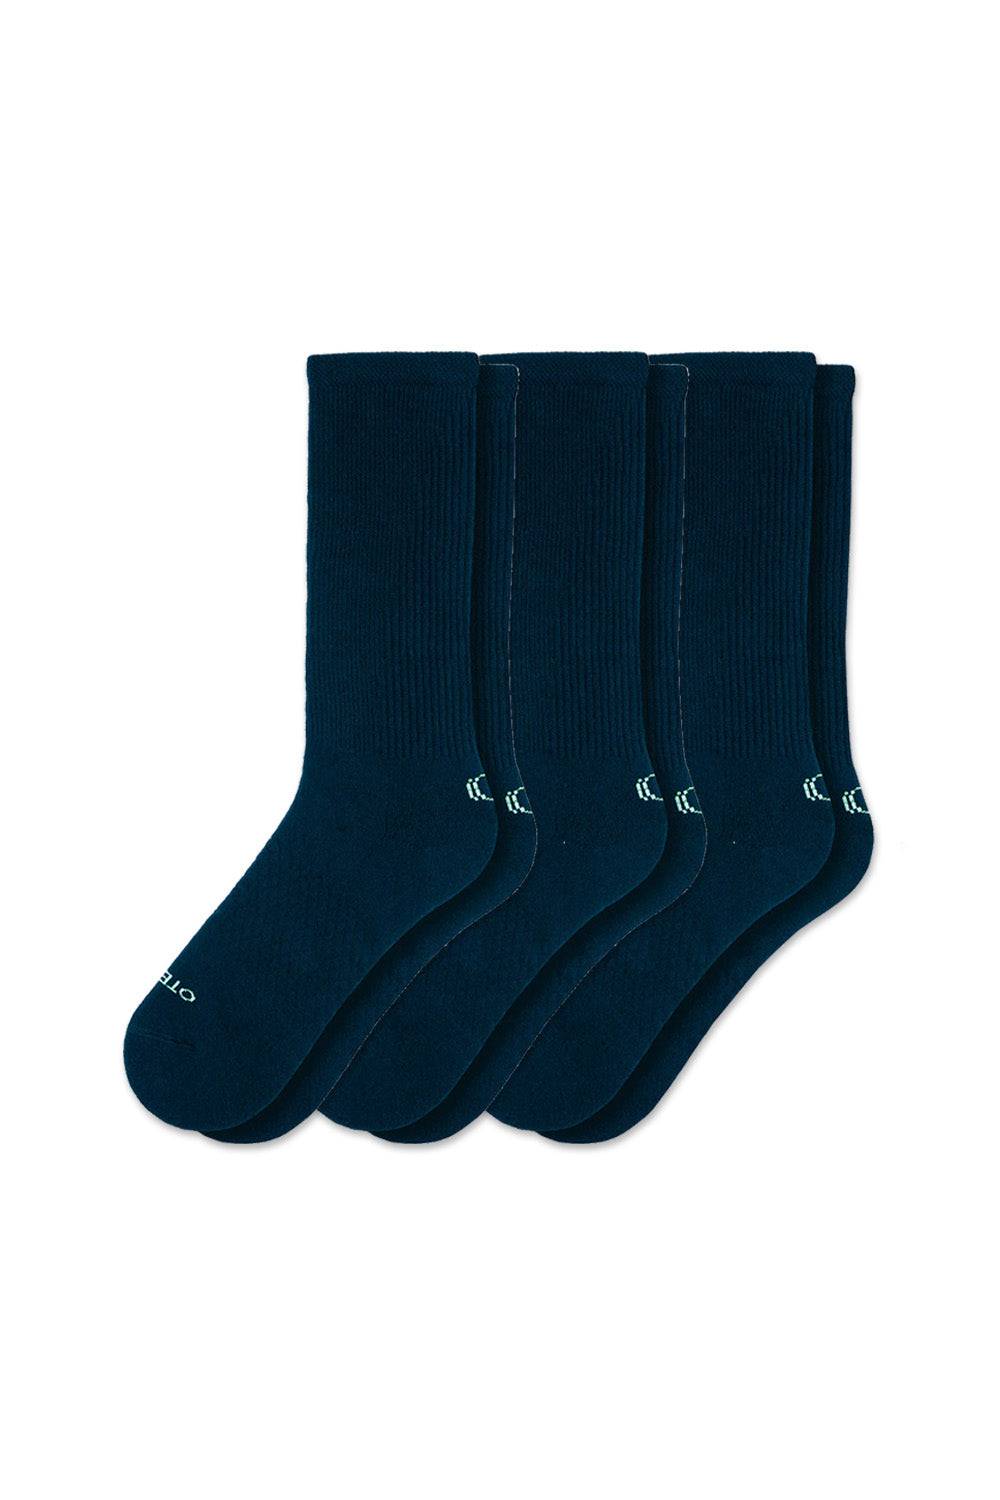 Basic crew Socks Strom Blue Pack of 3